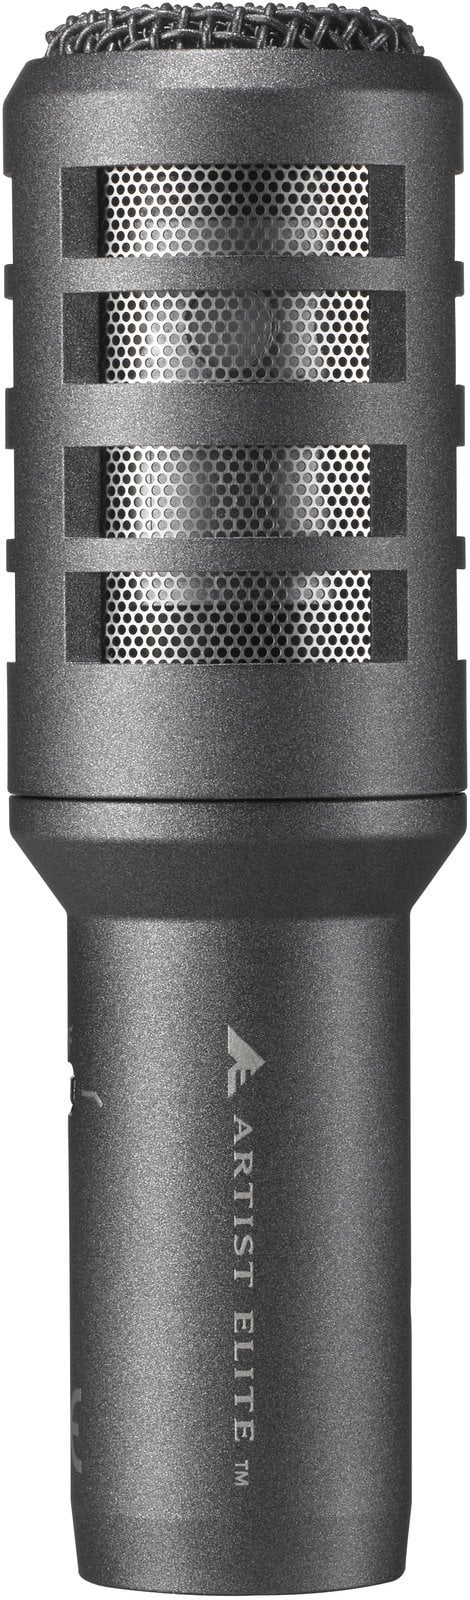 Microphone dynamique pour instruments Audio-Technica AE2300 Microphone dynamique pour instruments